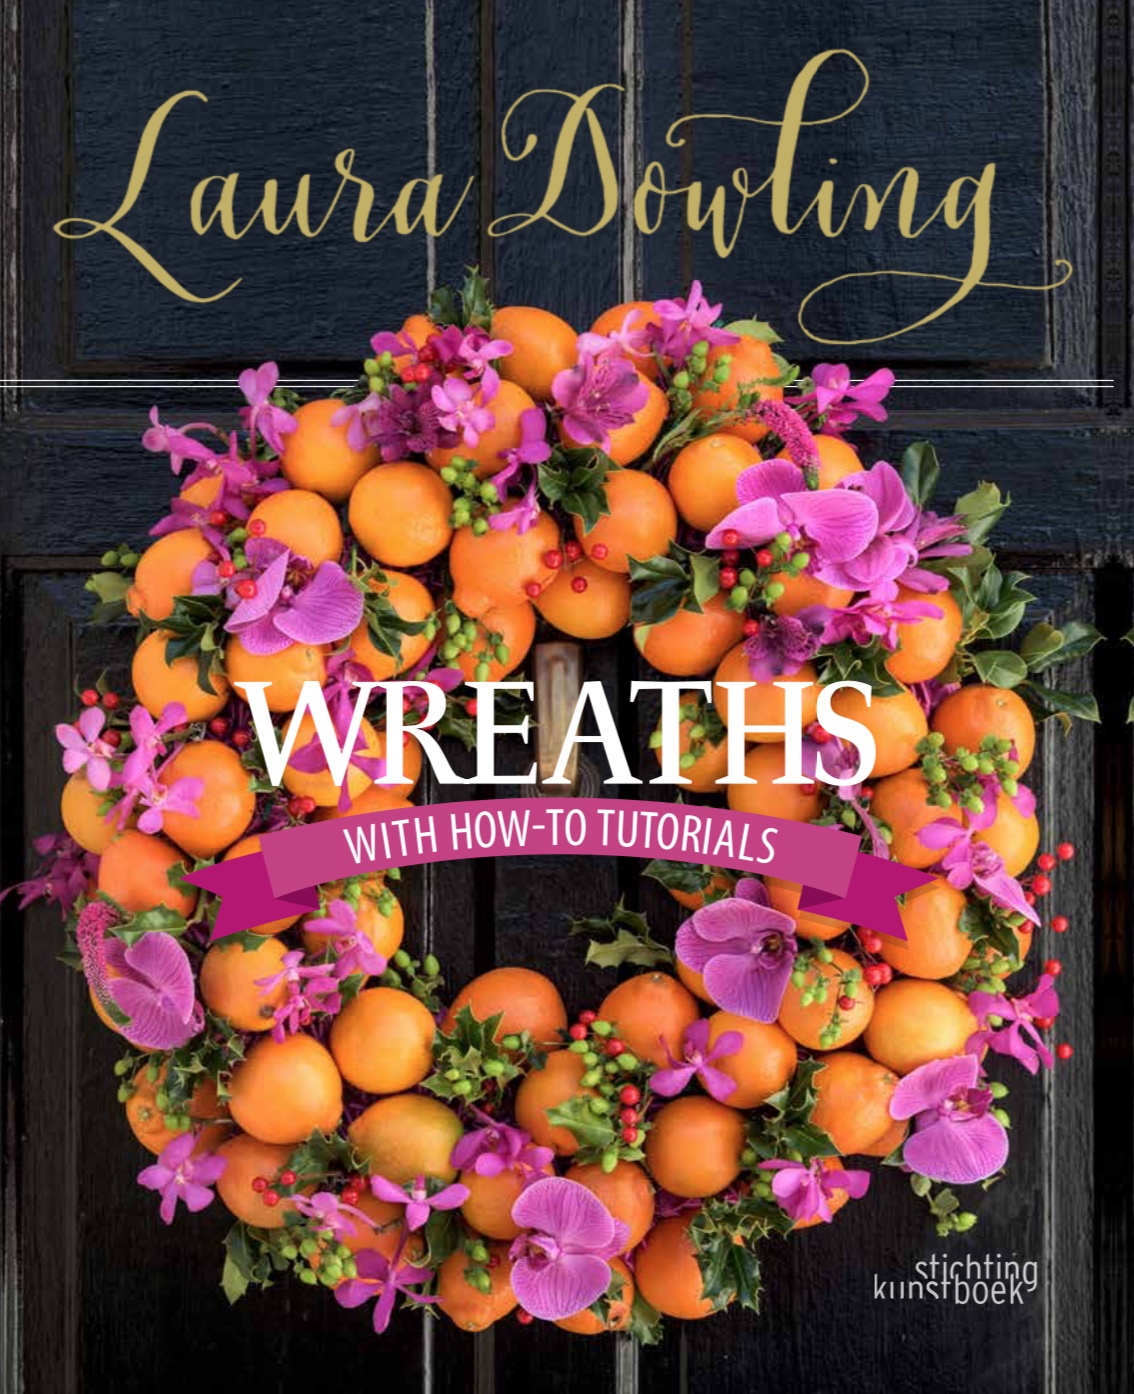 laura dowling wreaths book